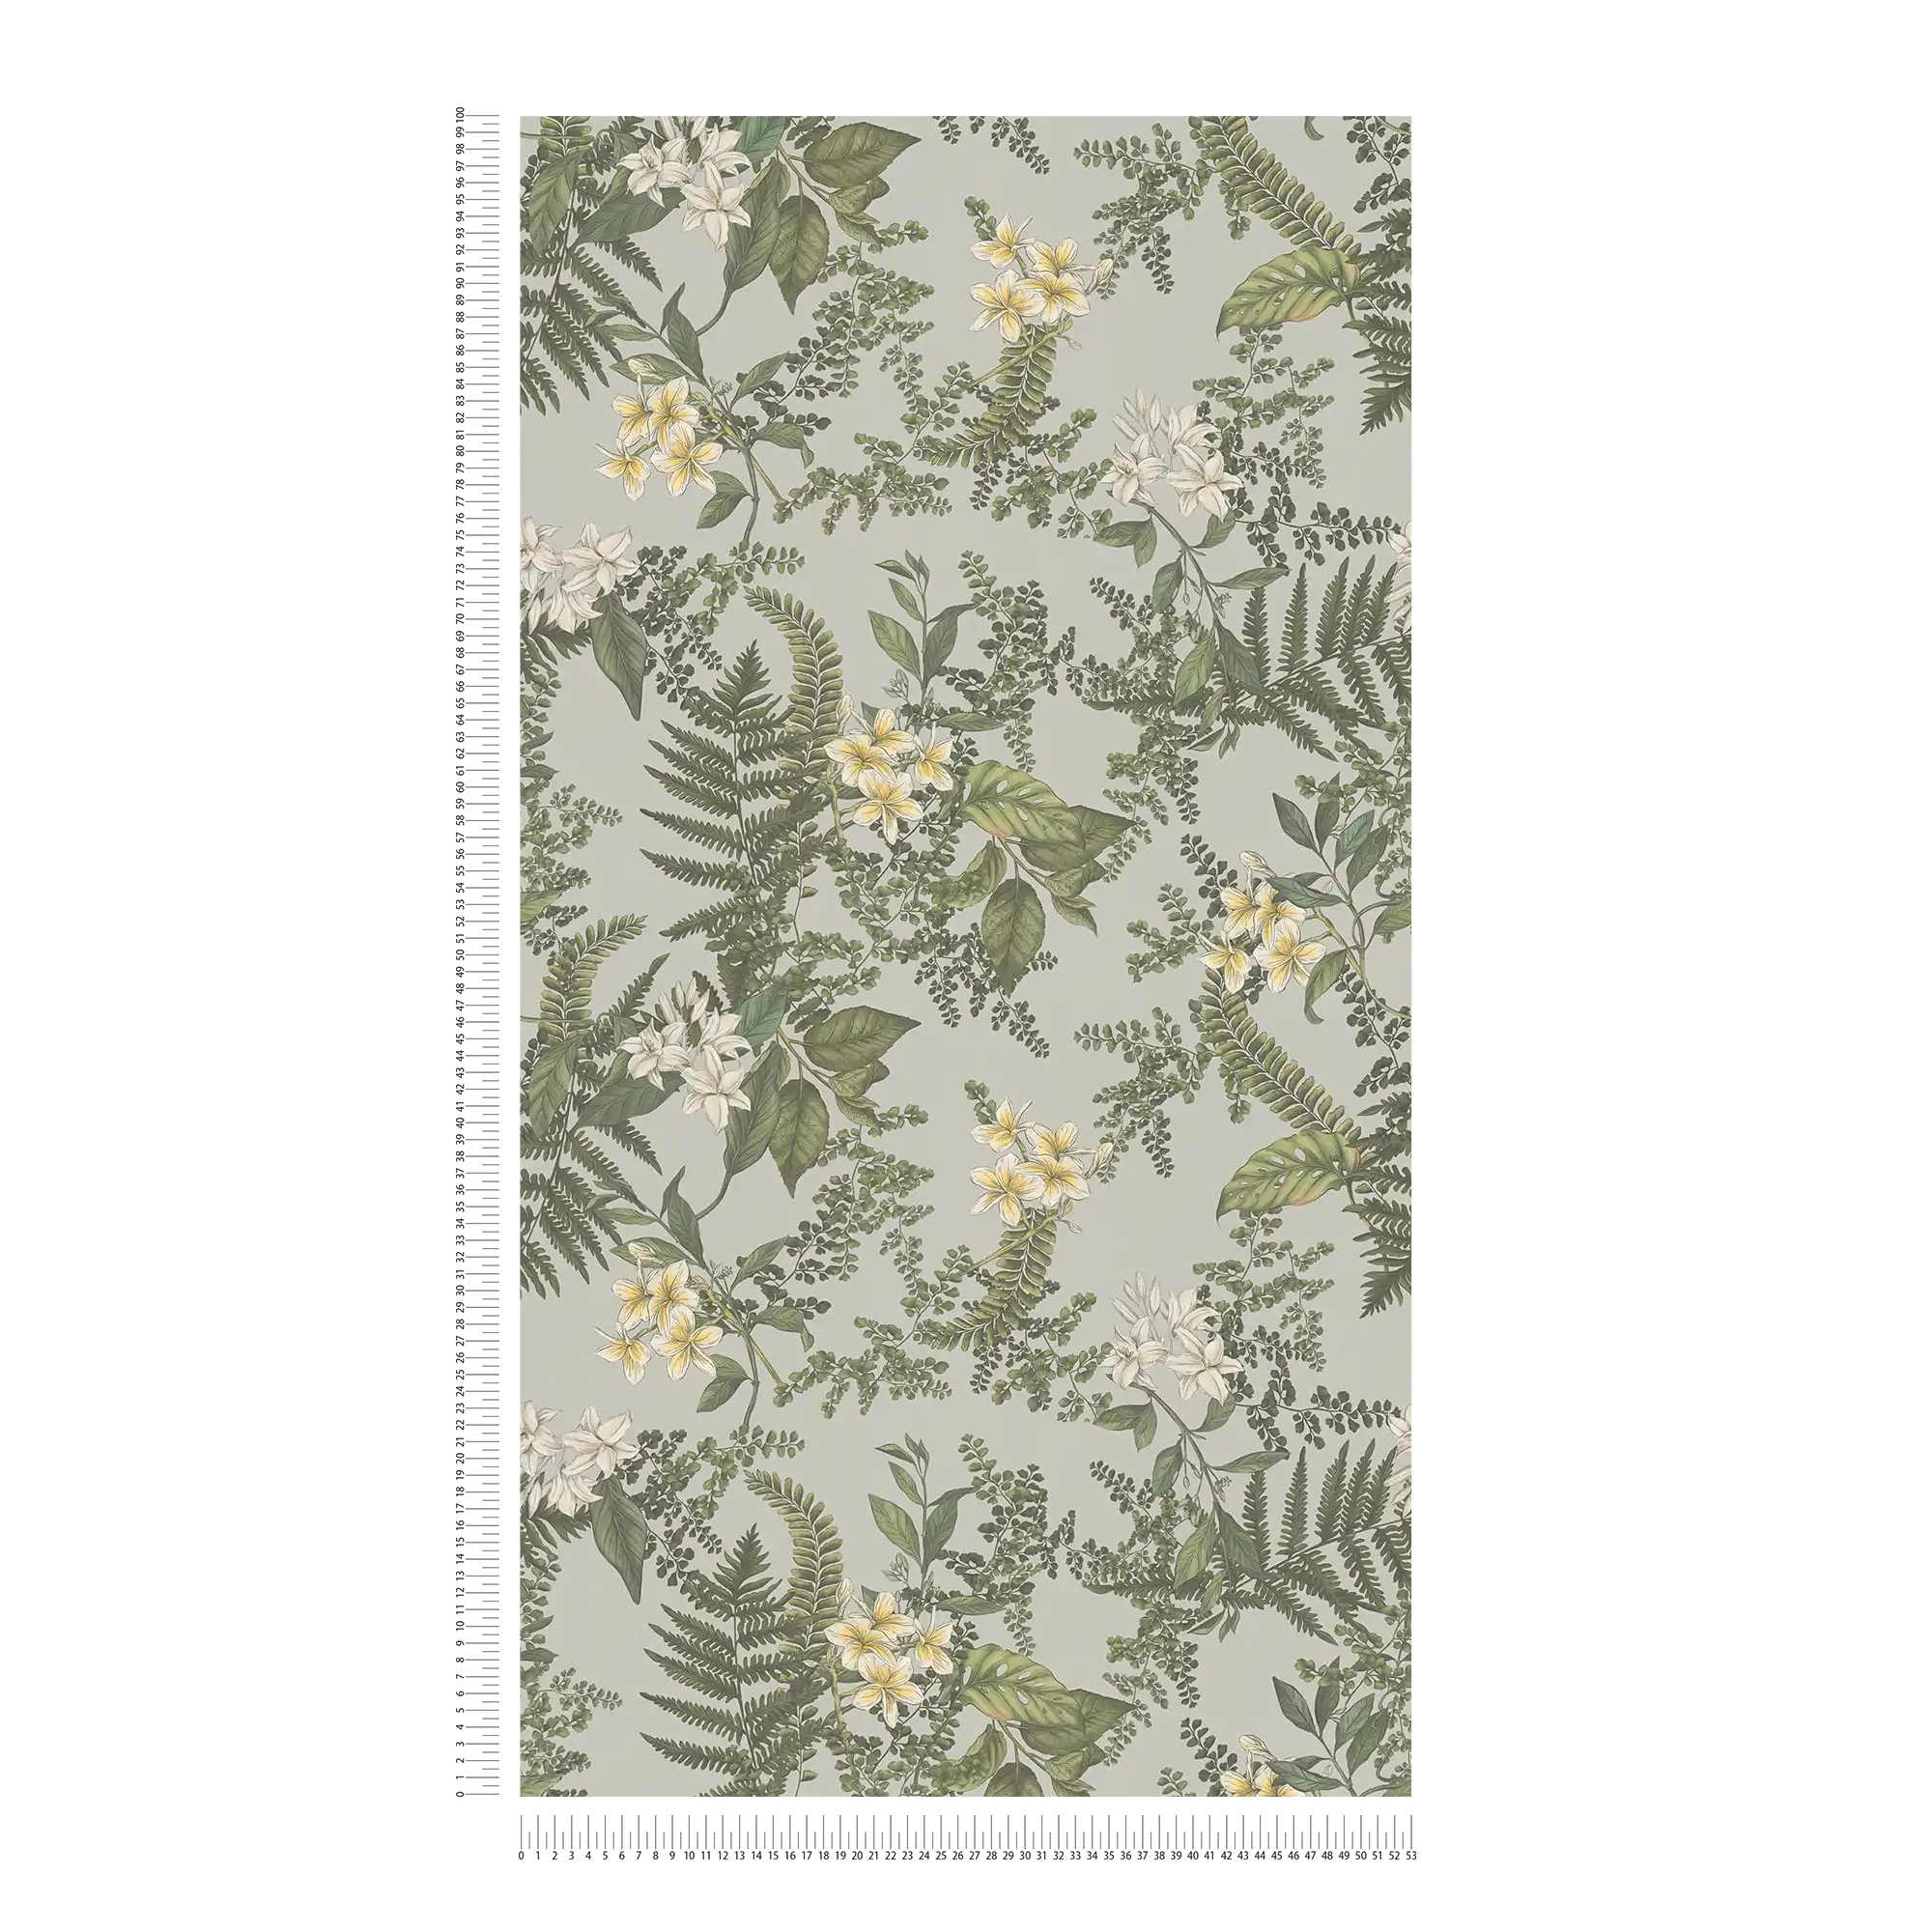             Modern behang in bloemenstijl met bloemen & grassen met matte structuur - grijs, donkergroen, wit
        